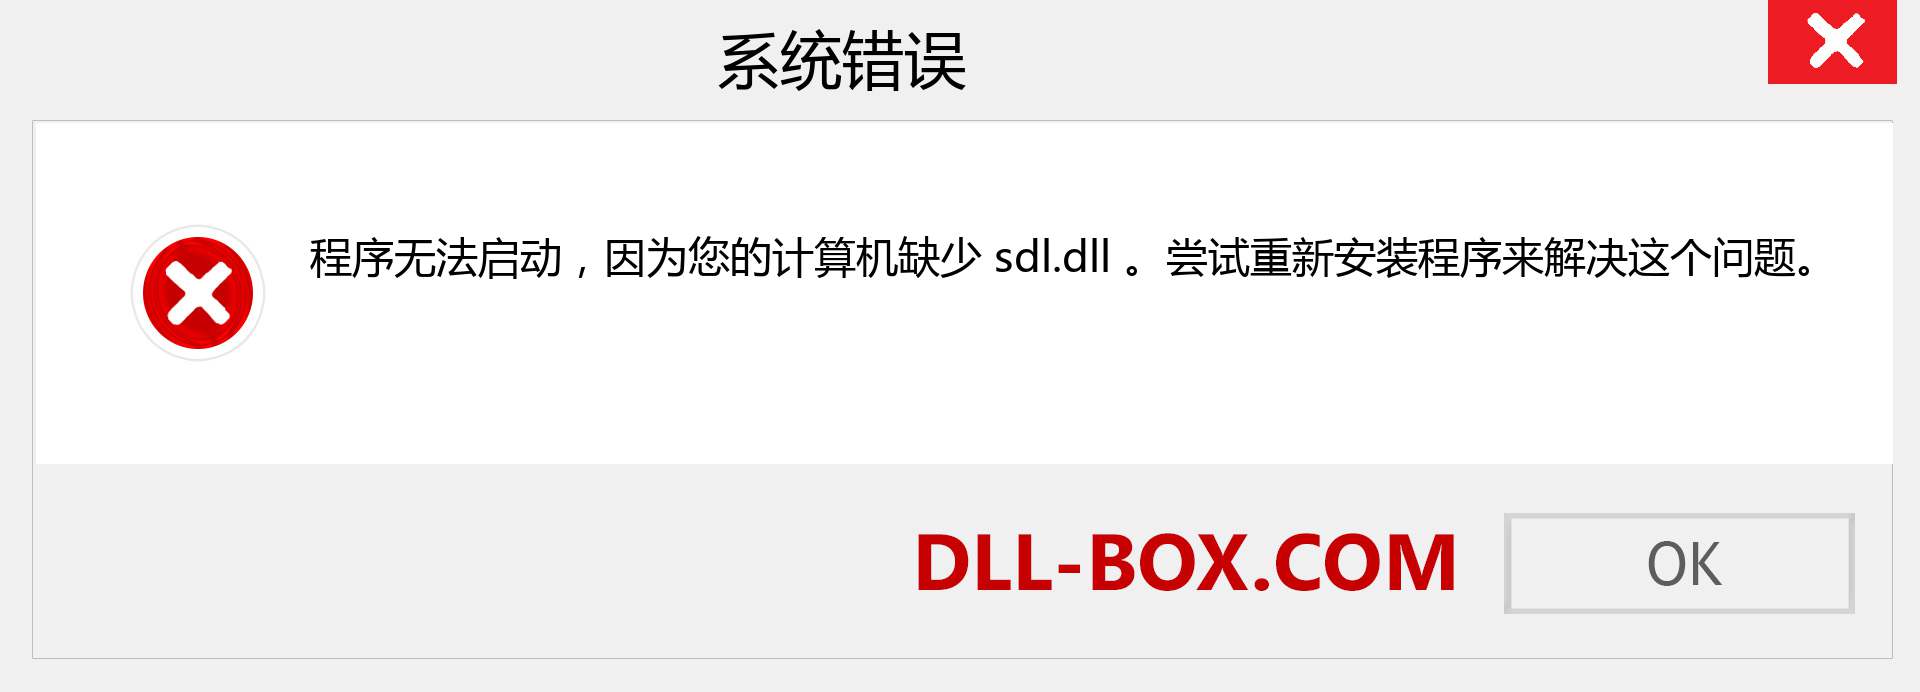 sdl.dll 文件丢失？。 适用于 Windows 7、8、10 的下载 - 修复 Windows、照片、图像上的 sdl dll 丢失错误